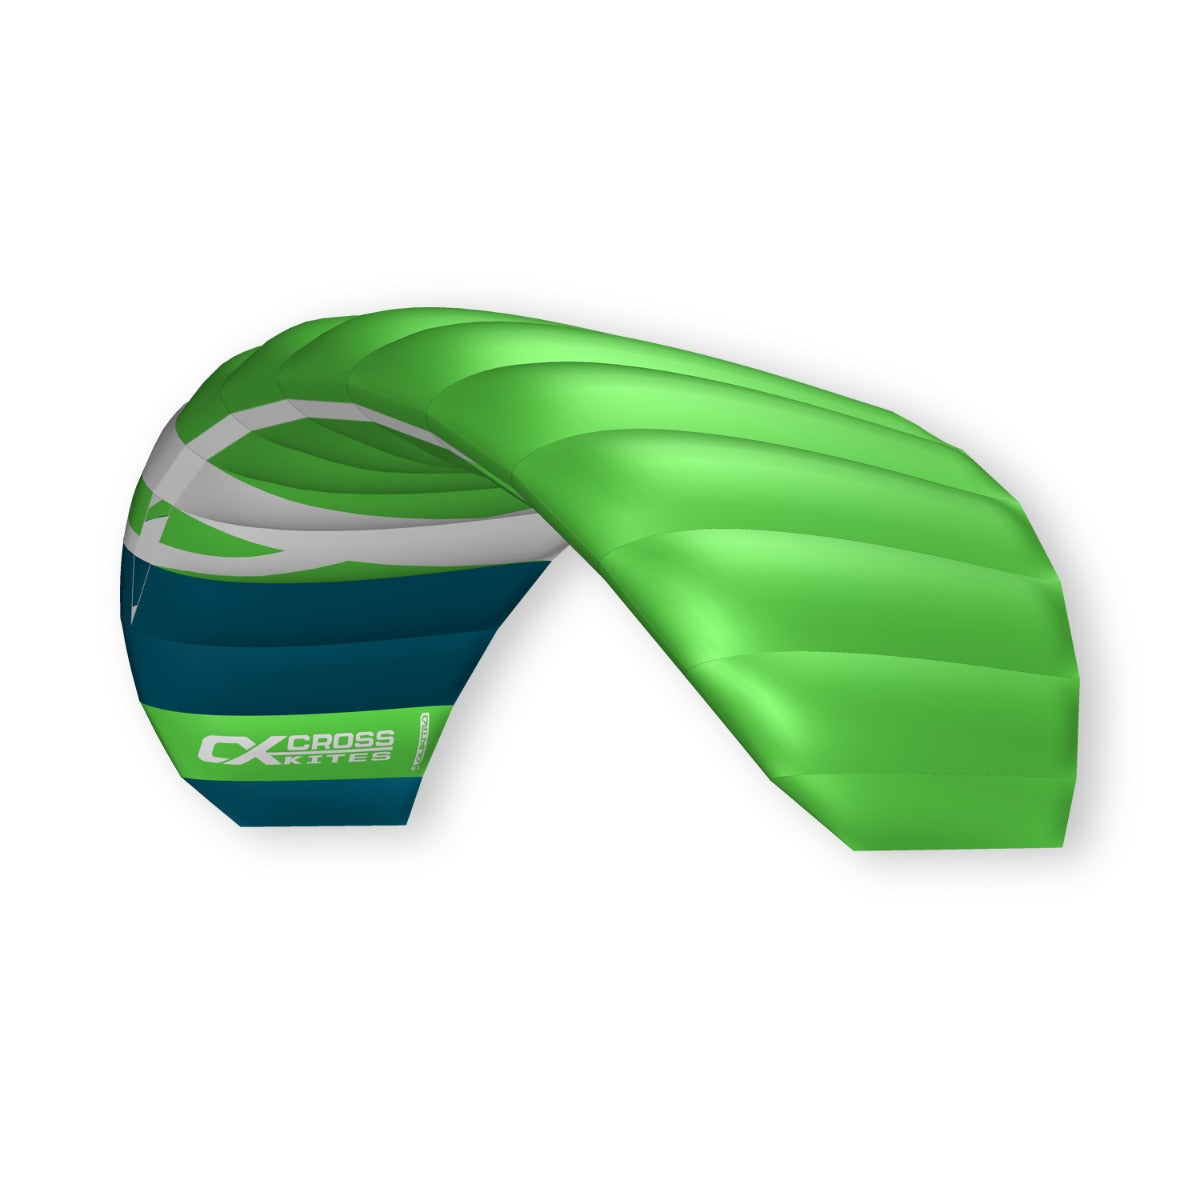 CrossKites Quattro 1.5 Green Vierleiner Lenkmatte Lenkdrachen mit Handles R2F Kite